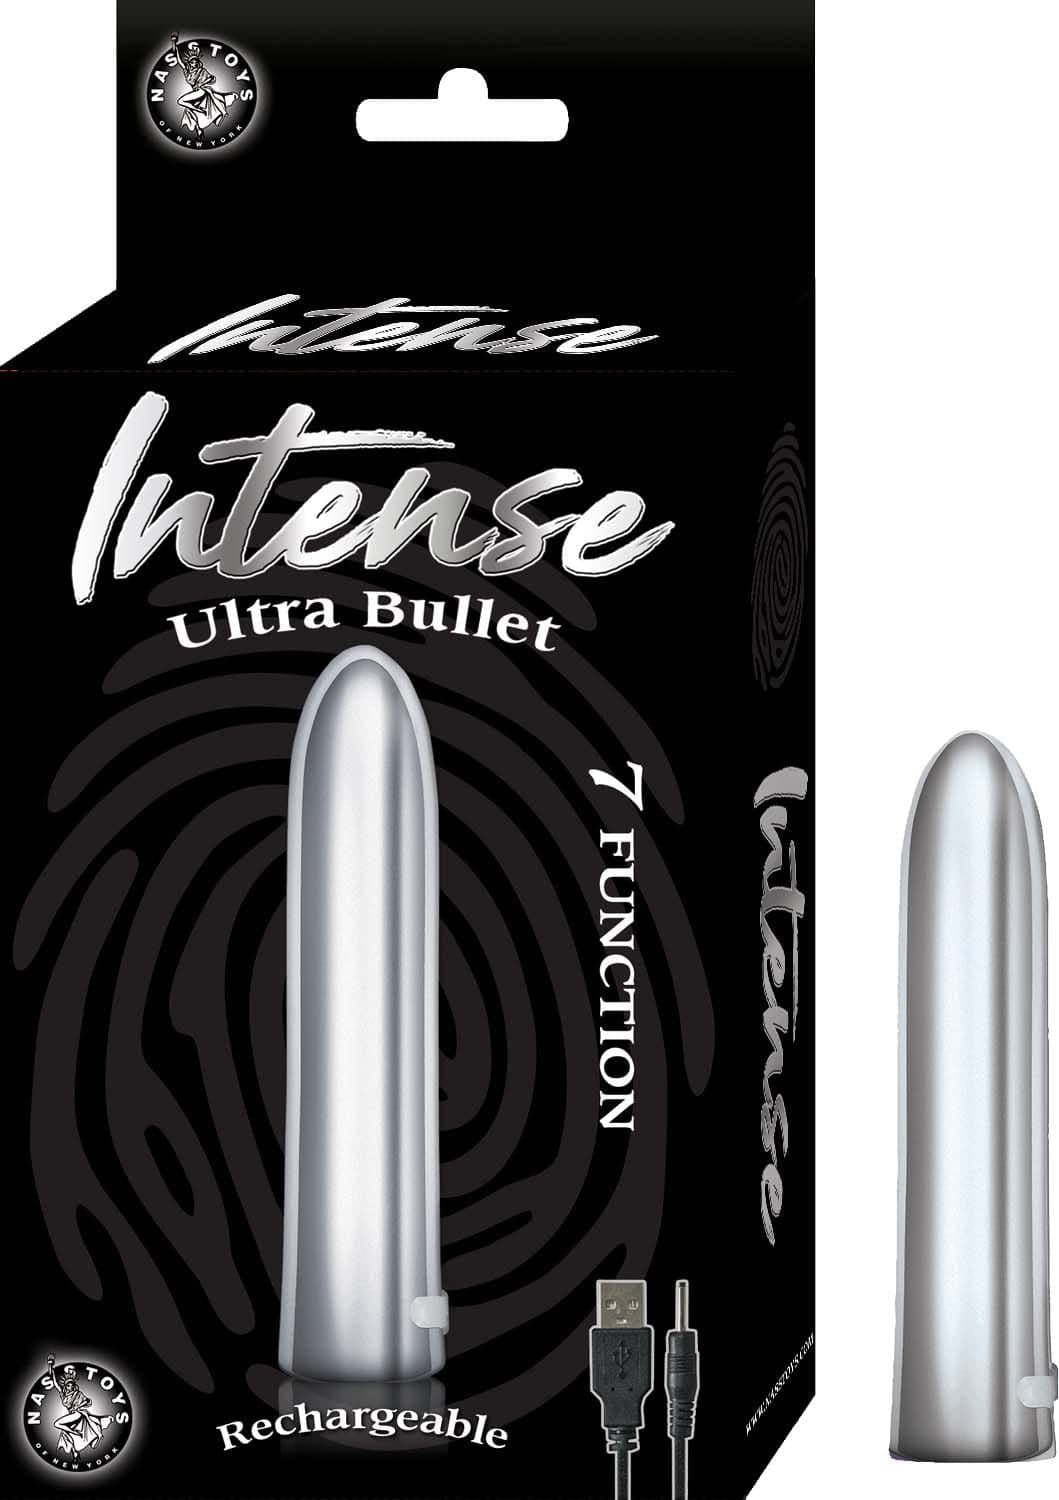 bullet vibrators